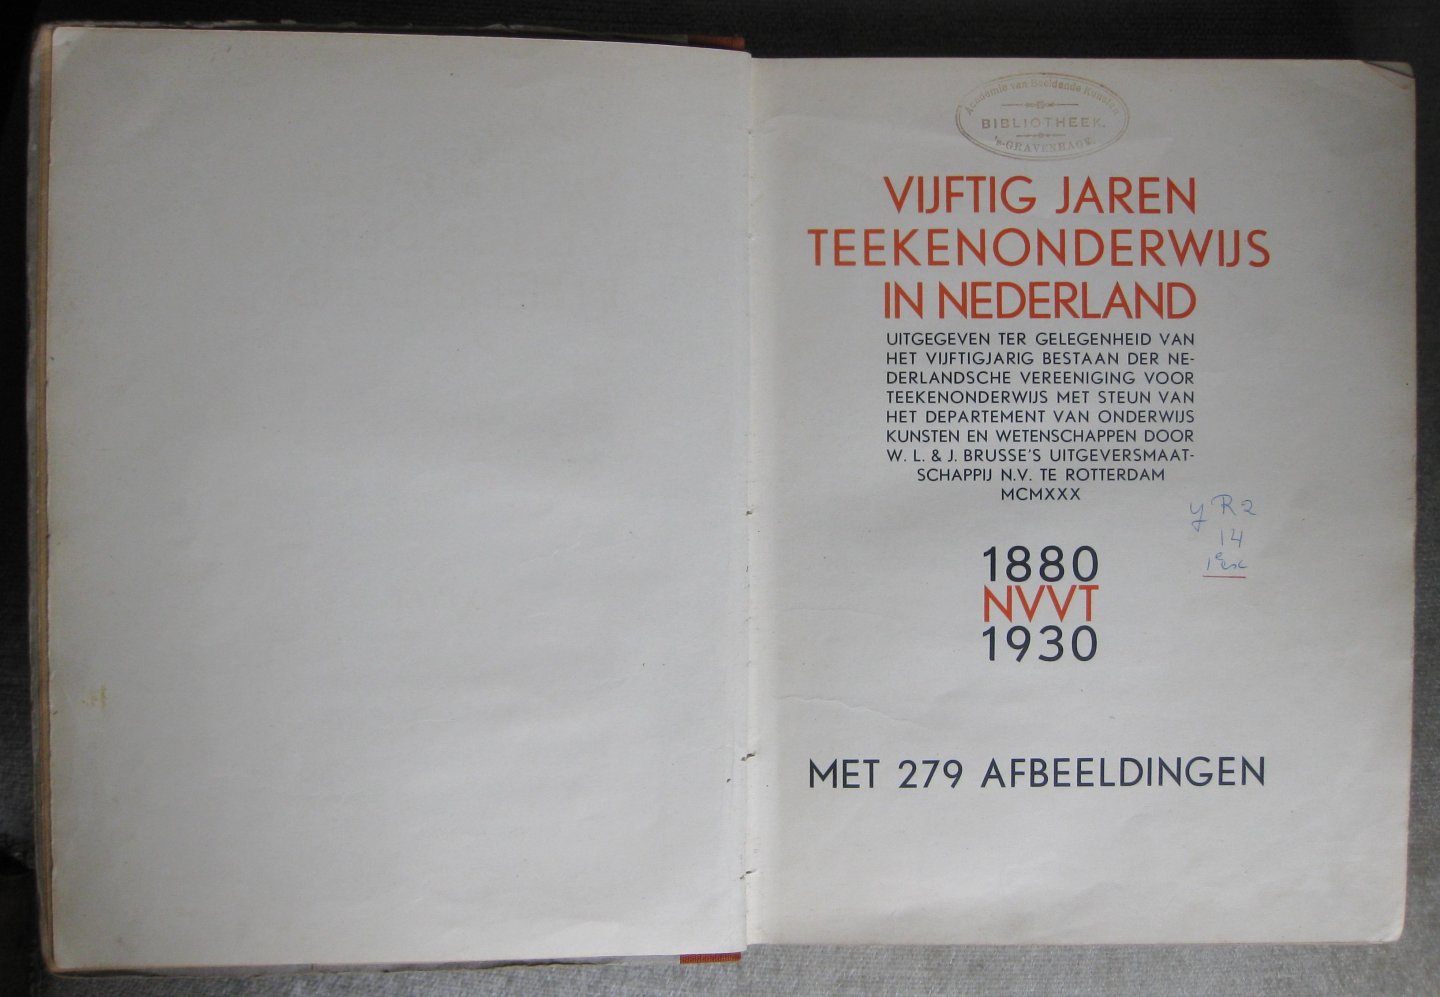  - Vijftig jaren teekenonderwijs in Nederland 1880-1930